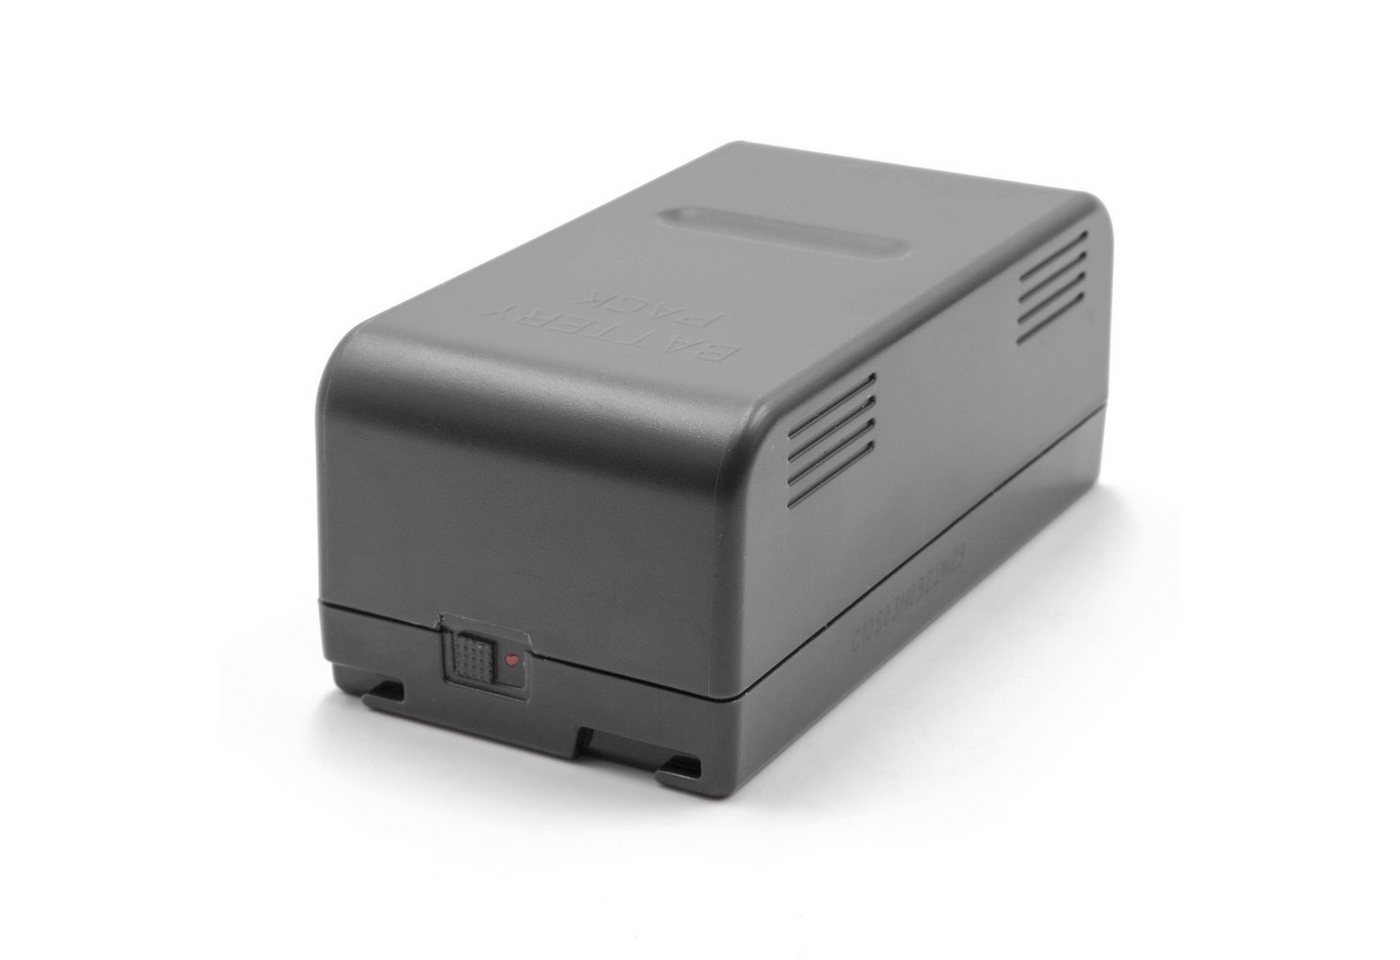 vhbw Kamera-Akku passend für Kompatibel mit RCA AutoShot CC-643, CC-645, CC-648, CC-6491, CC-710, CC-740, CC-800, CC-837 Kamera / Foto DSLR (4200mAh, 6V, NiMH) 4200 mAh von vhbw